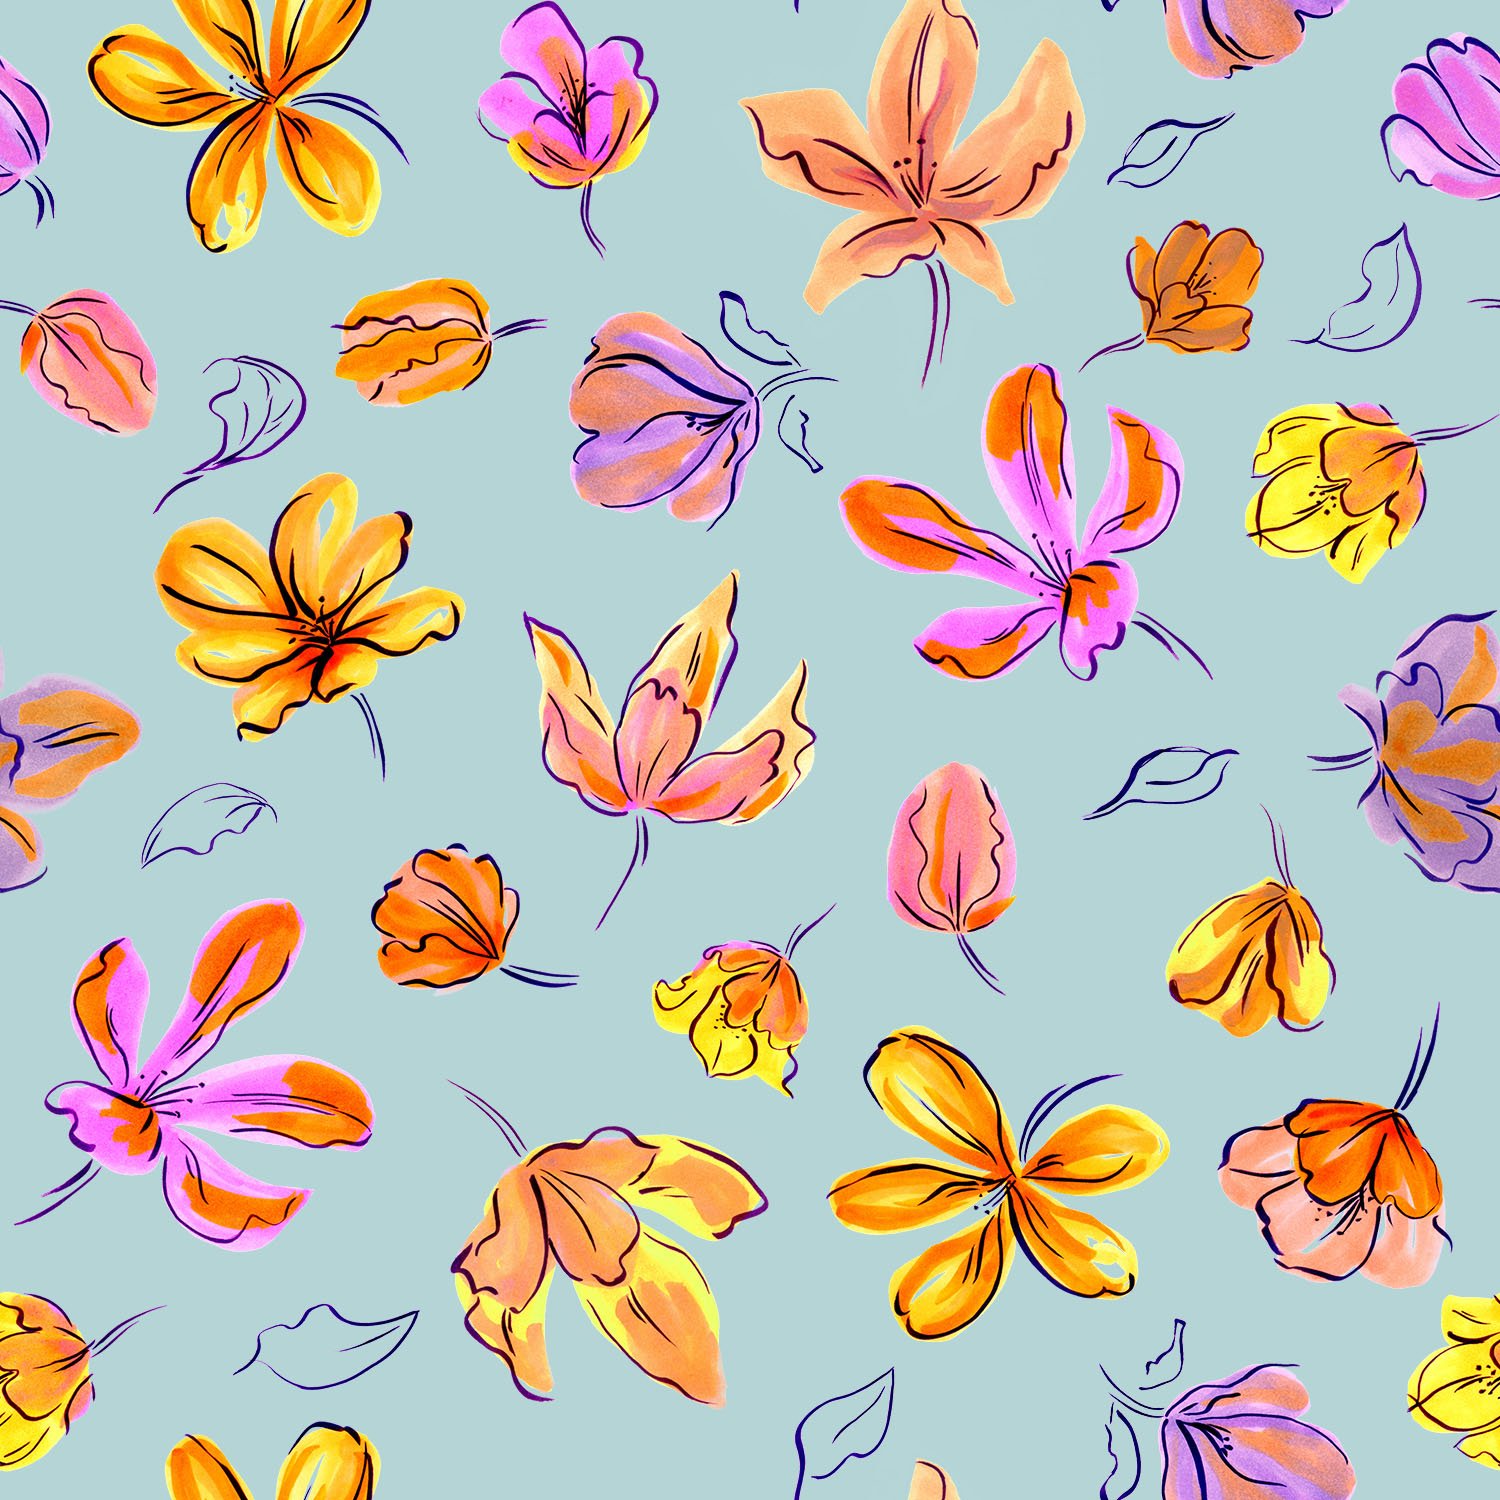 Dufy Floral estampa 01.jpg